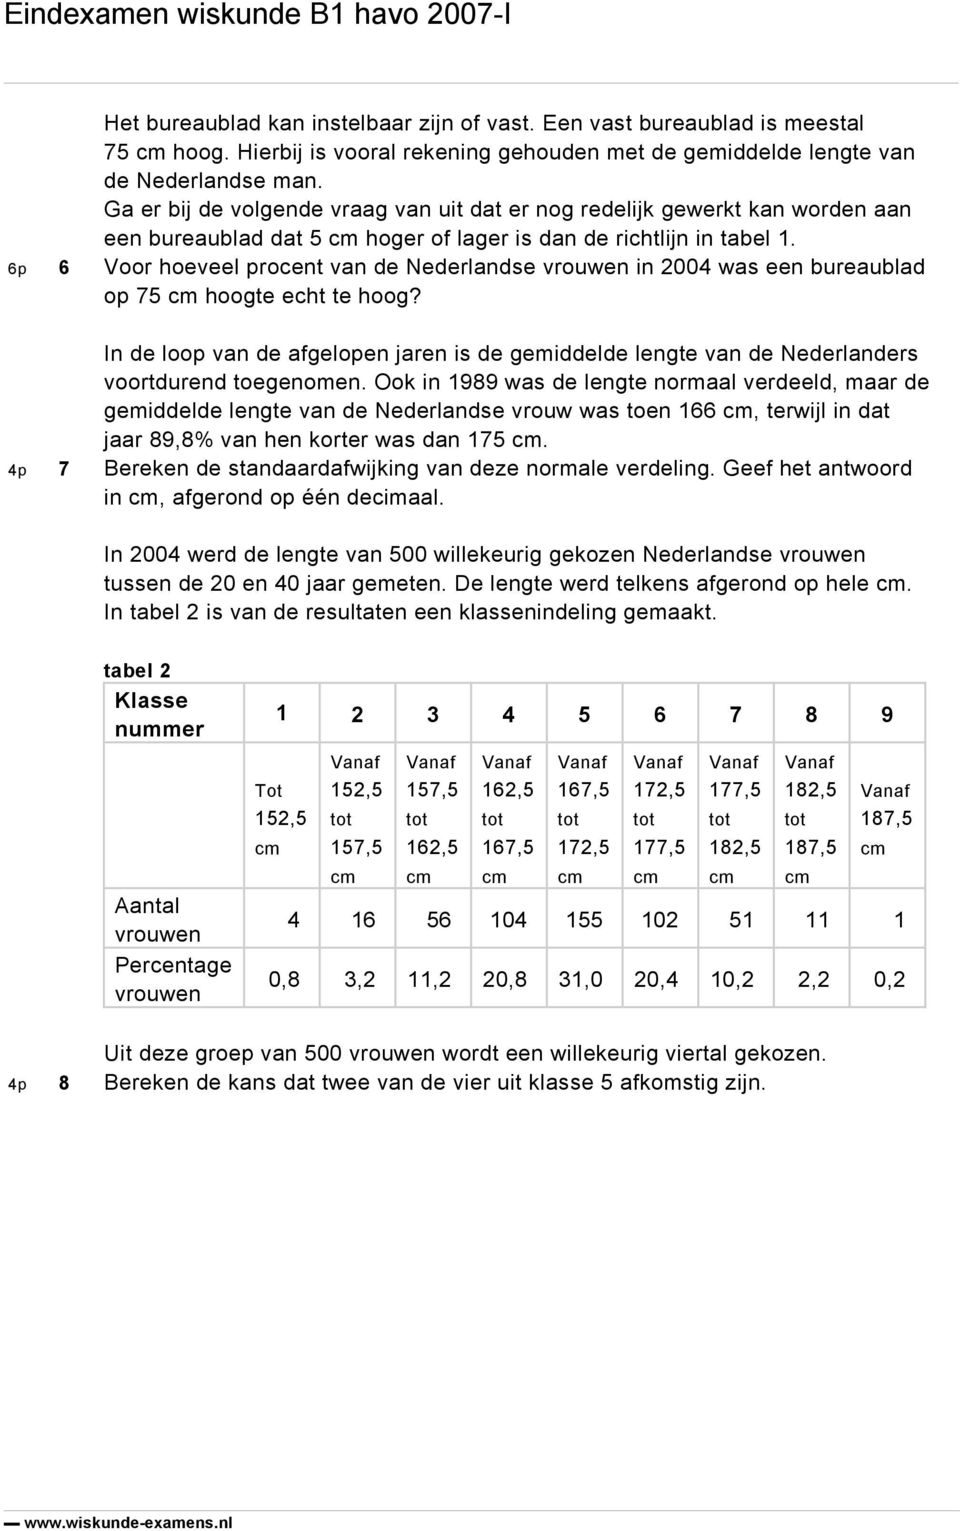 6p 6 Voor hoeveel procent van de Nederlandse vrouwen in 2004 was een bureaublad op 75 hoogte echt te hoog?